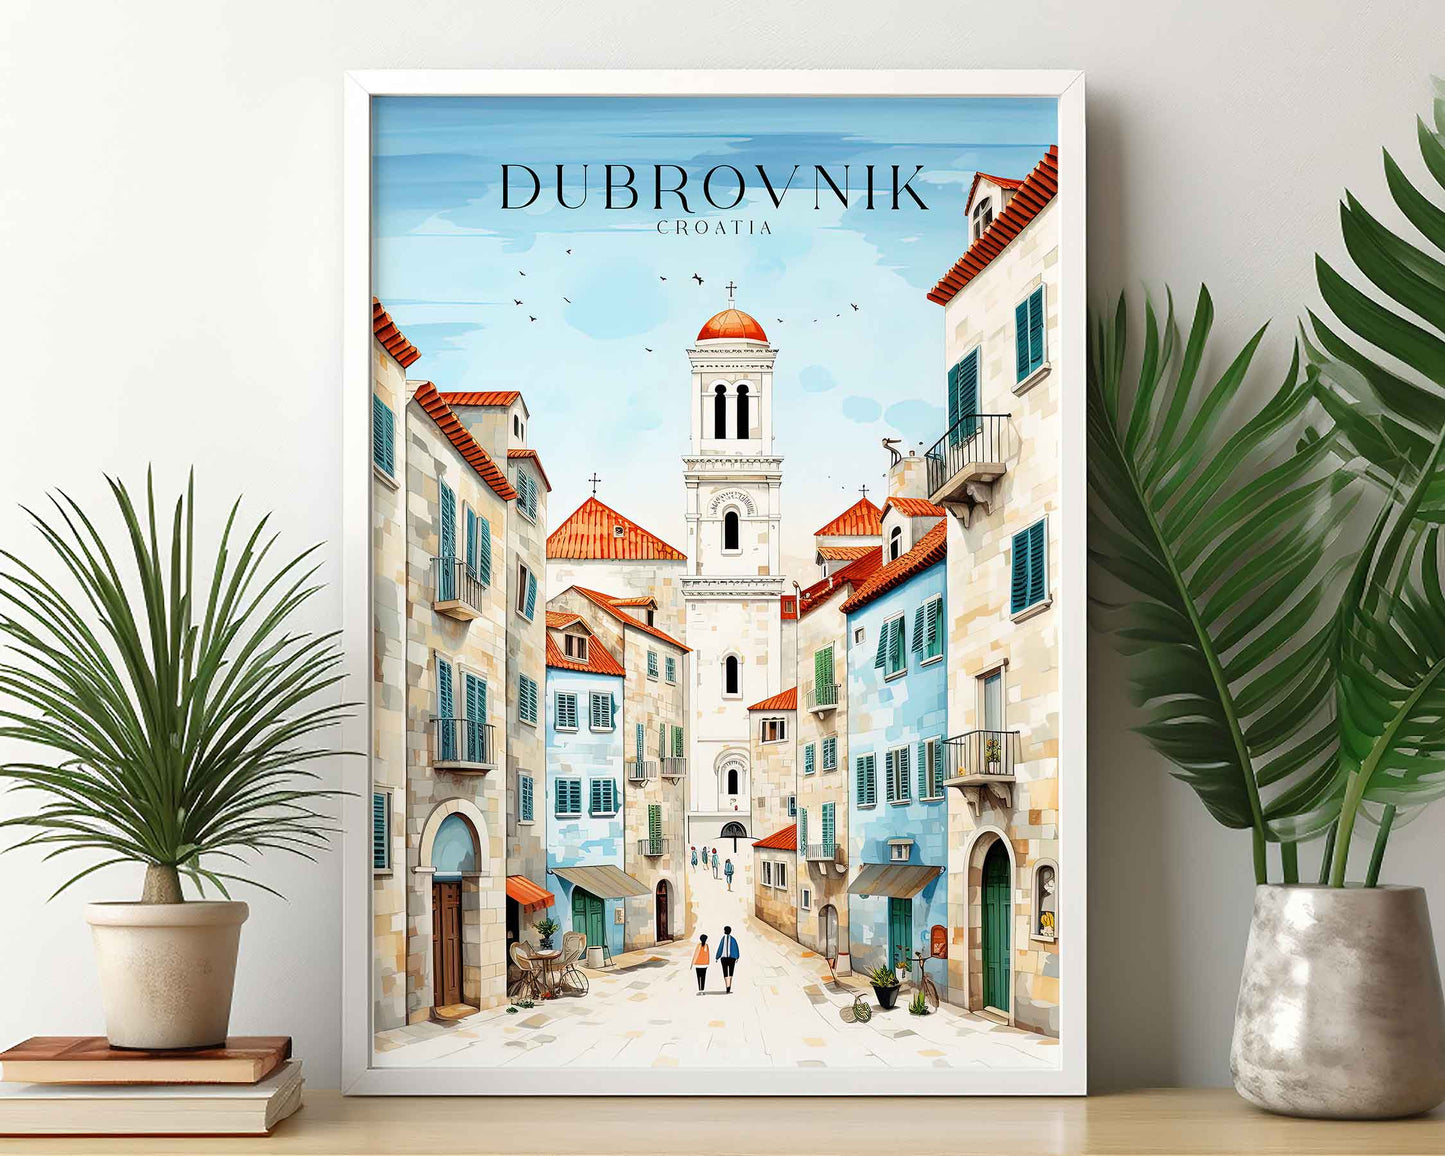 Framed Image of Dubrovnik Croatia Travel Poster Prints Illustration Wall Art